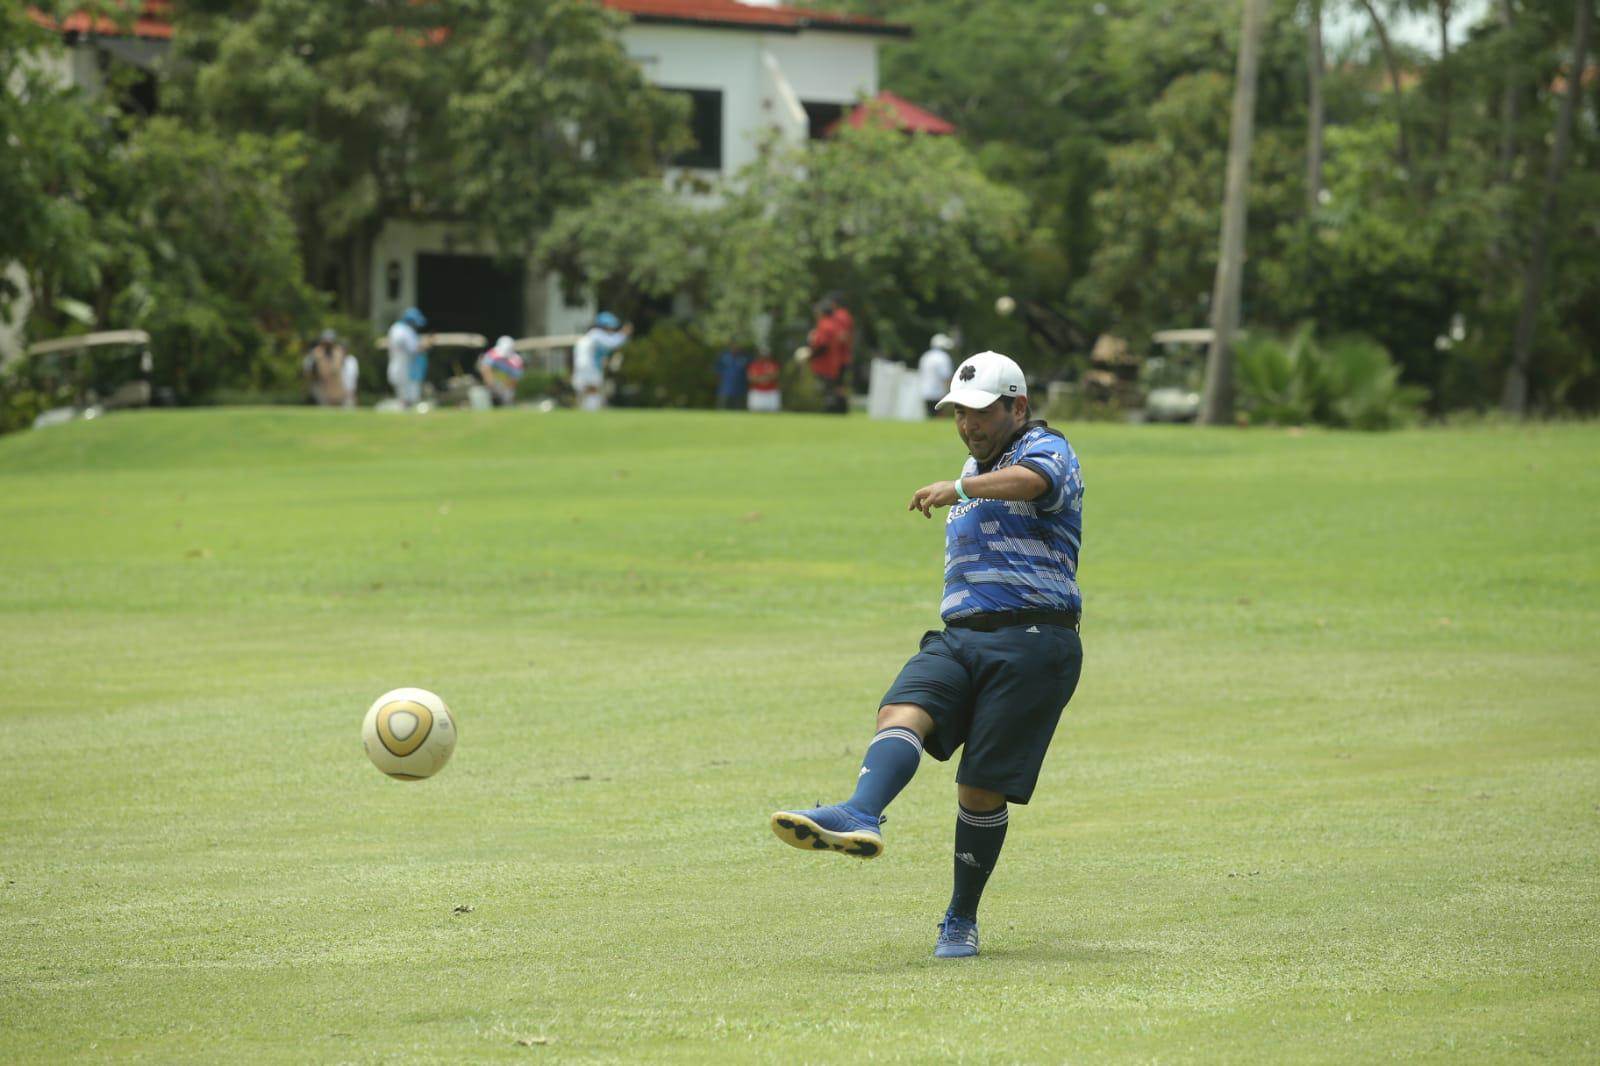 $!Jalisciense Gabriel García conquista el Nacional de Footgolf realizado en Mazatlán